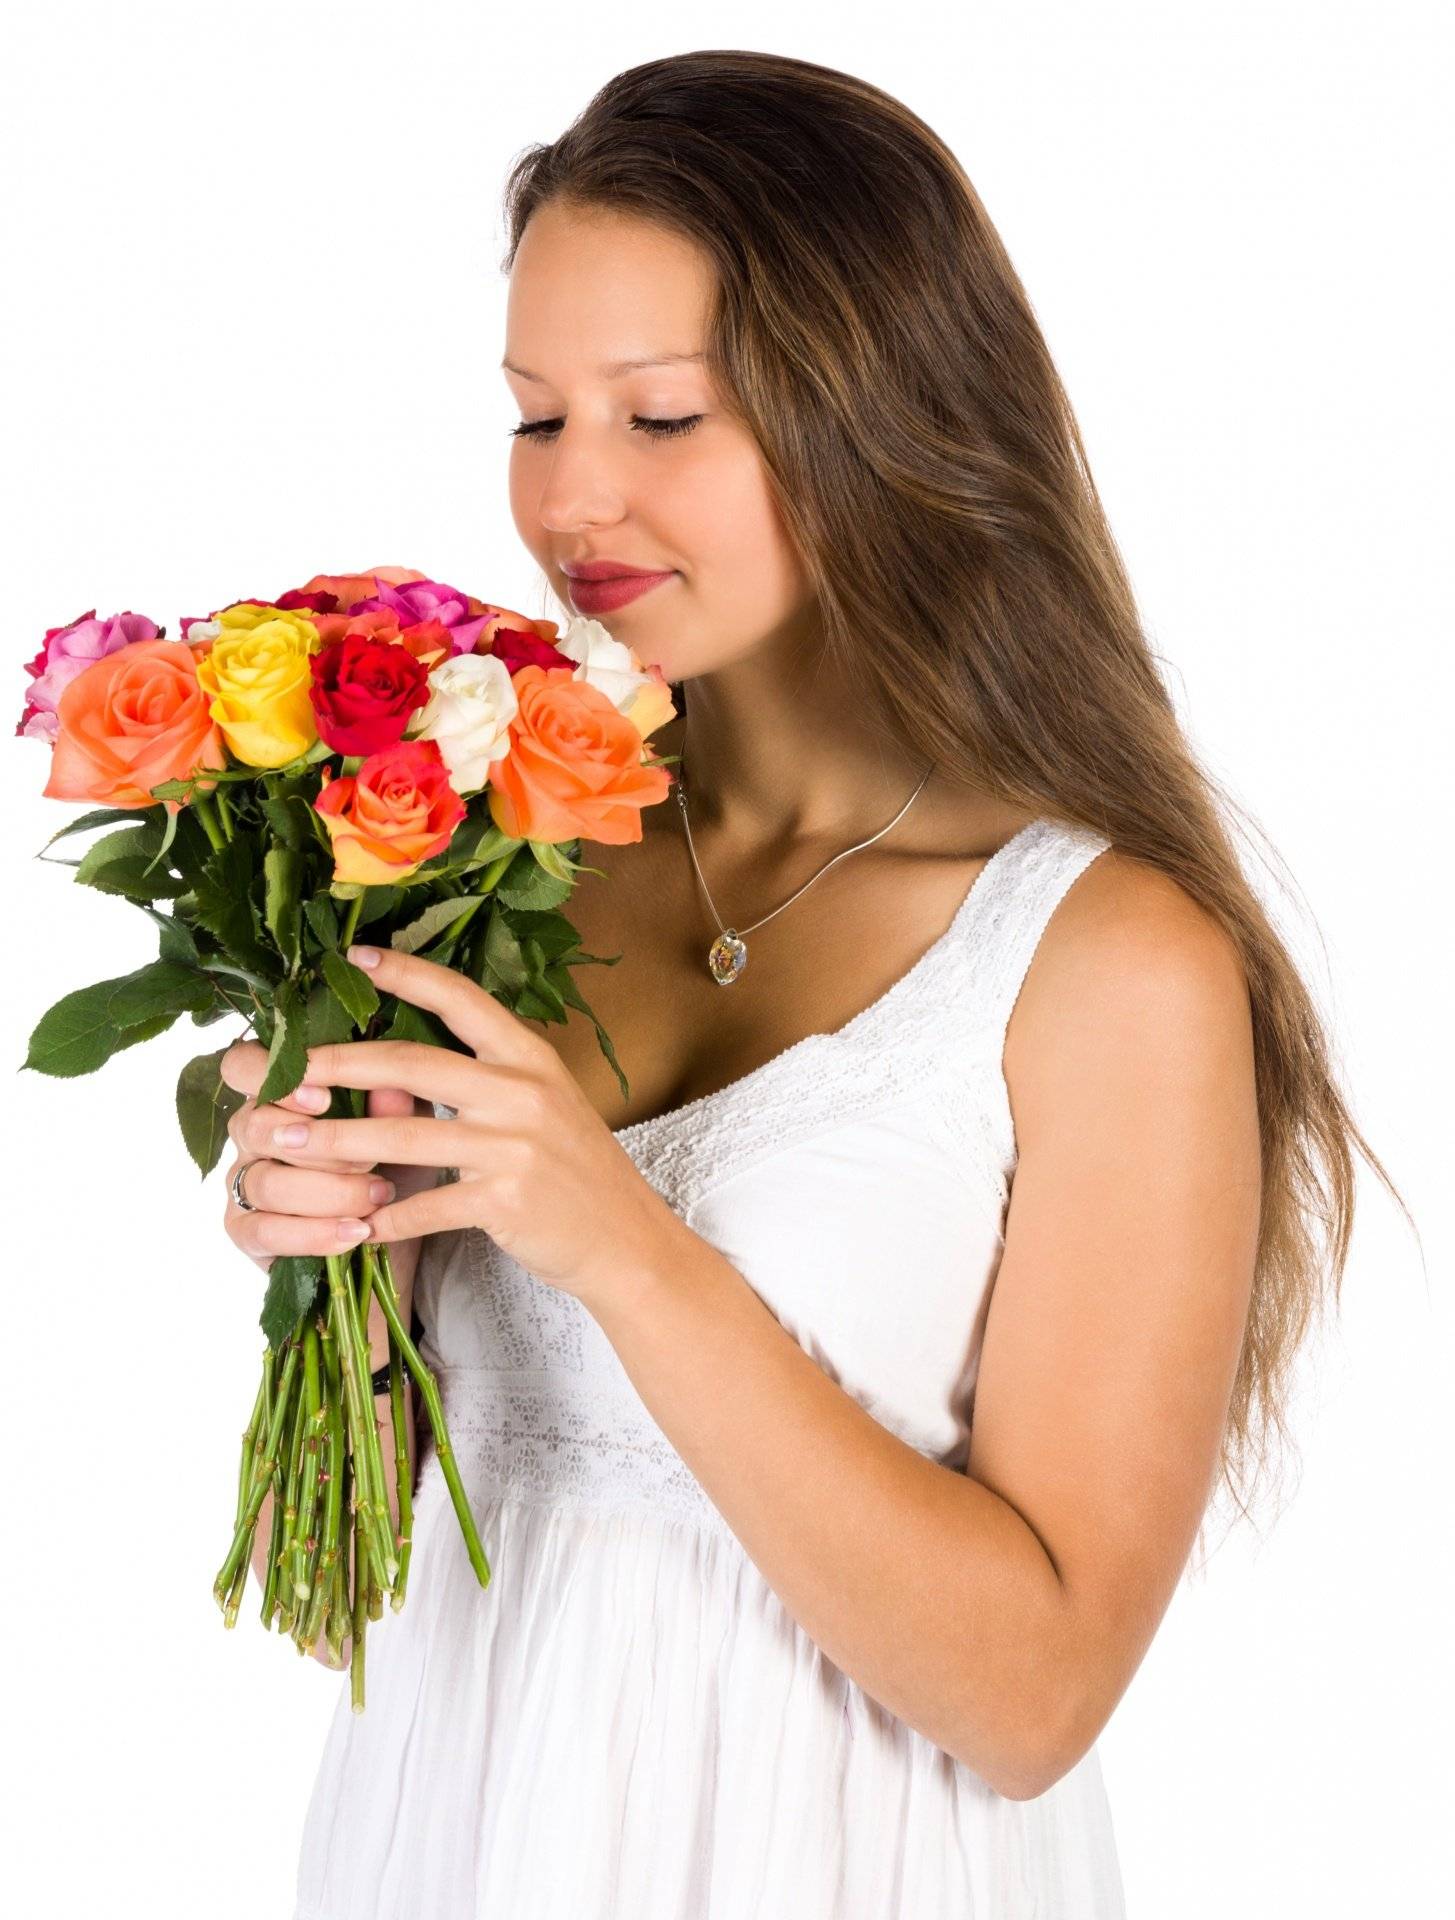 Какие цветы подарить девушке? какой букет подарить девушке?